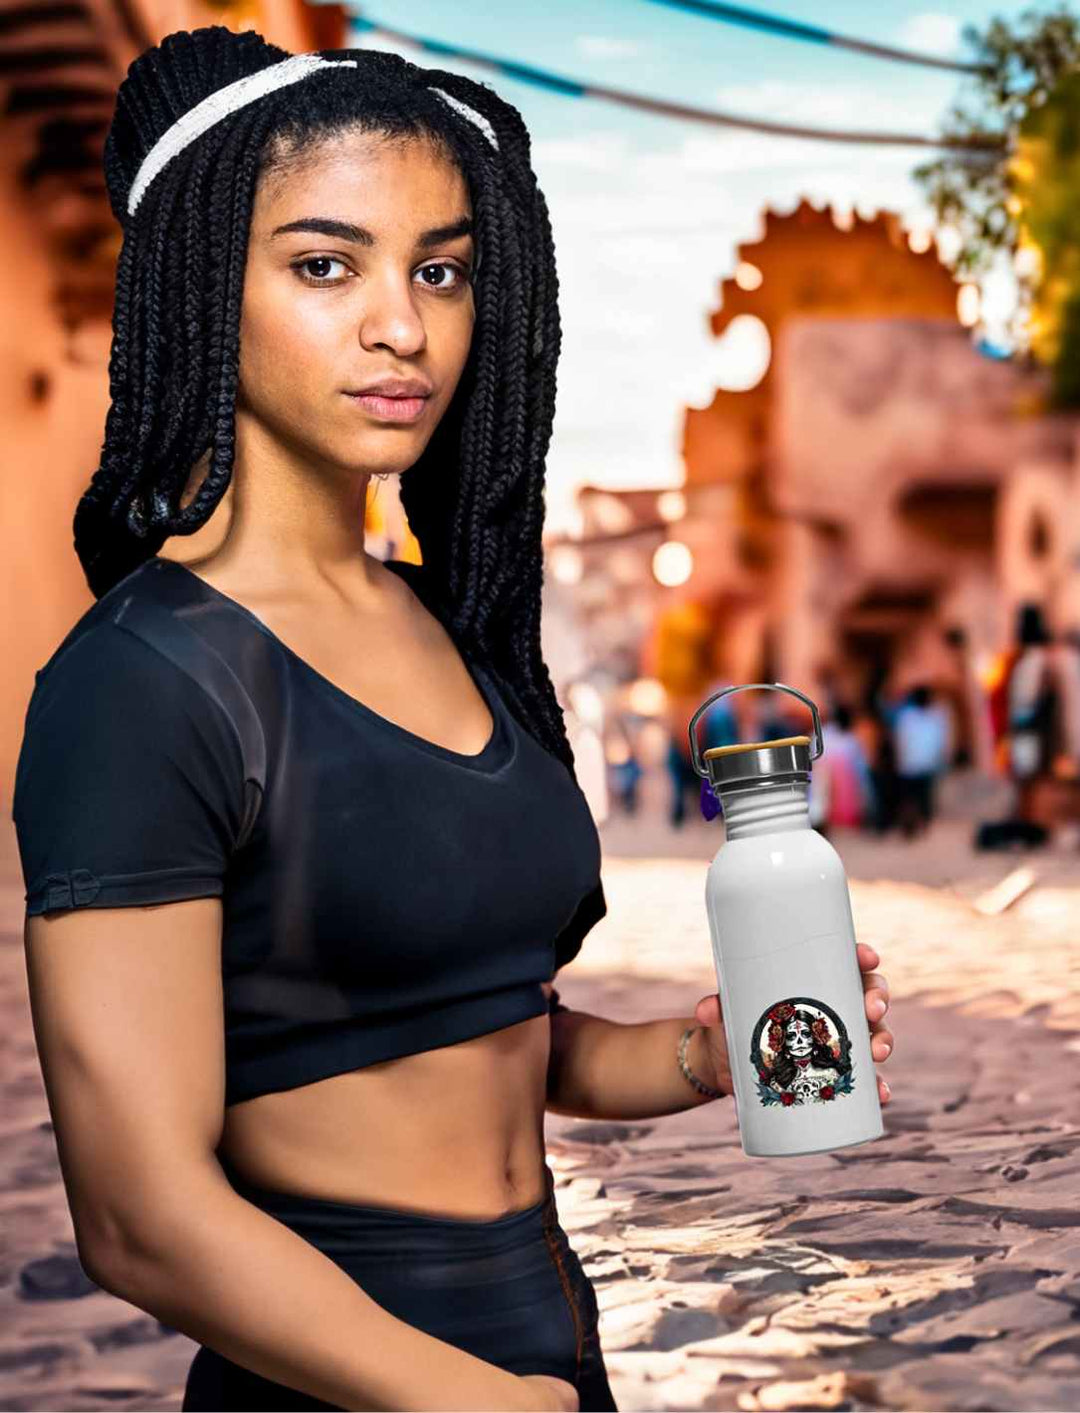 Junge Frau hält die La Catrina Edelstahl Trinkflasche in Emaille-Optik, stehend auf einer charakteristischen mexikanischen Straße während des Dia de los Muertos – Runental.de